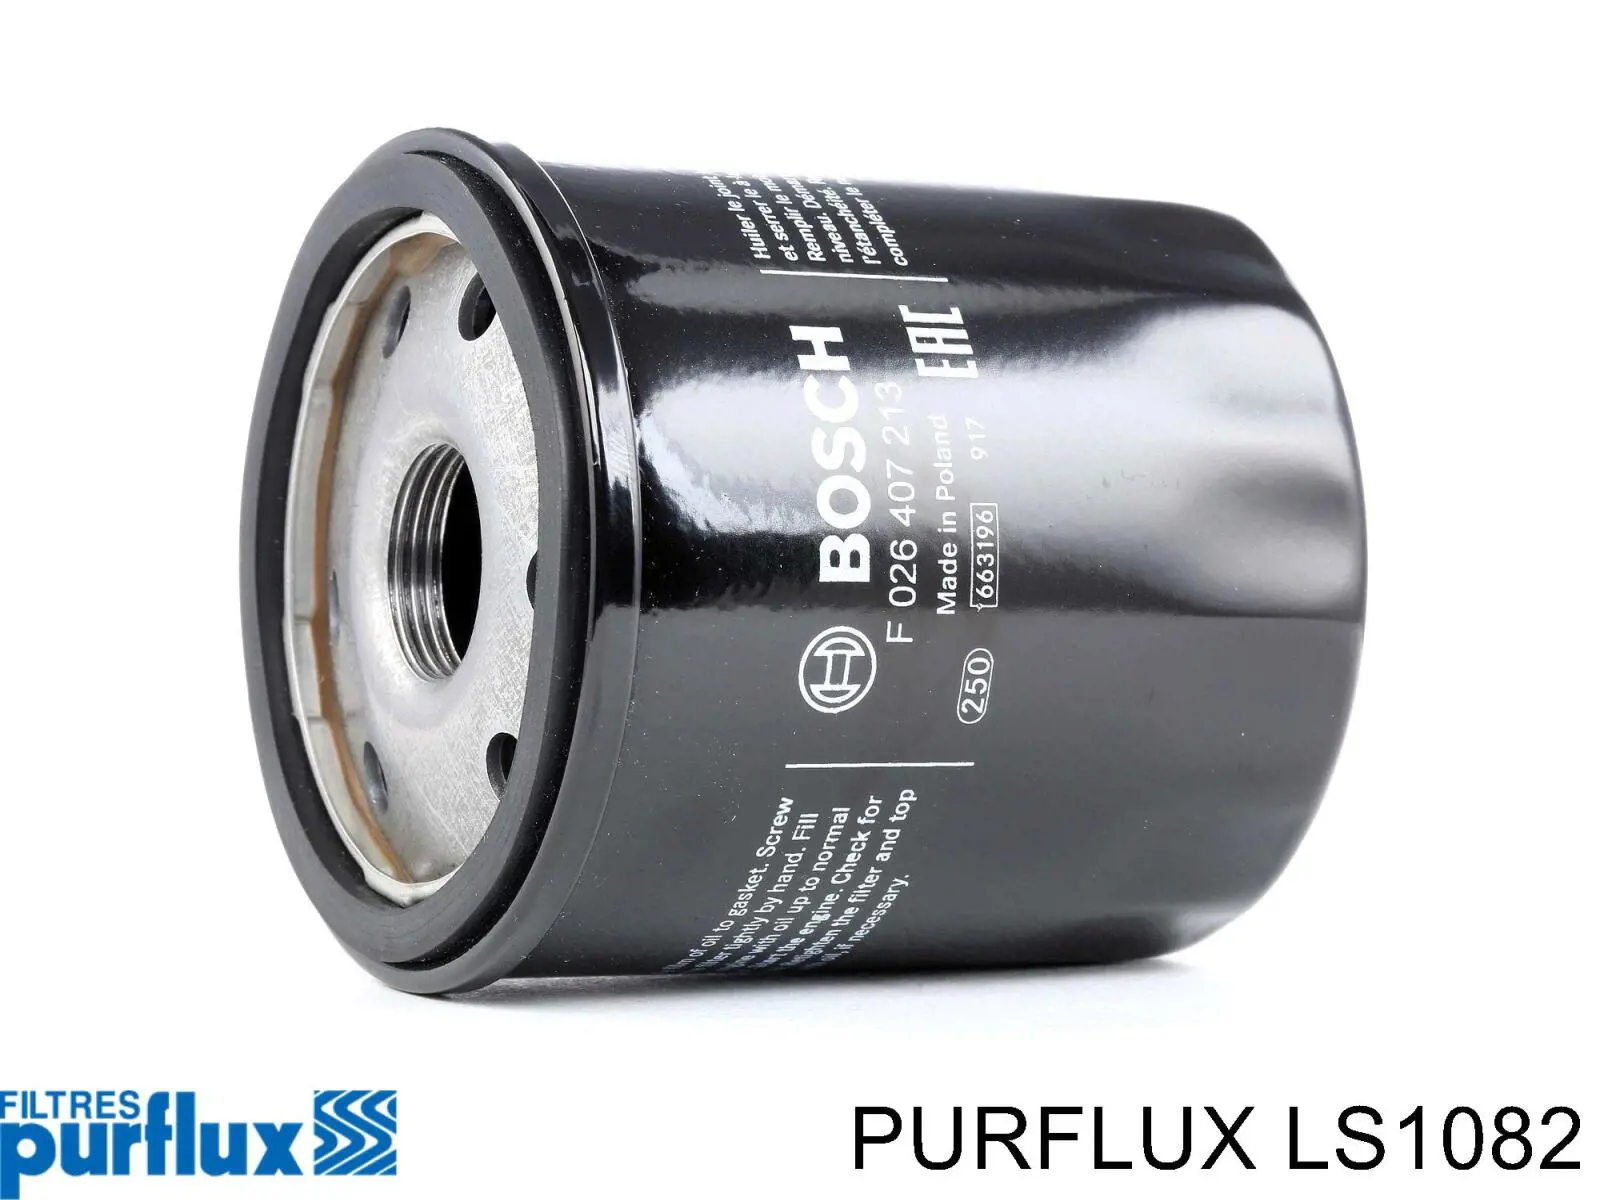 LS1082 Purflux filtro de aceite